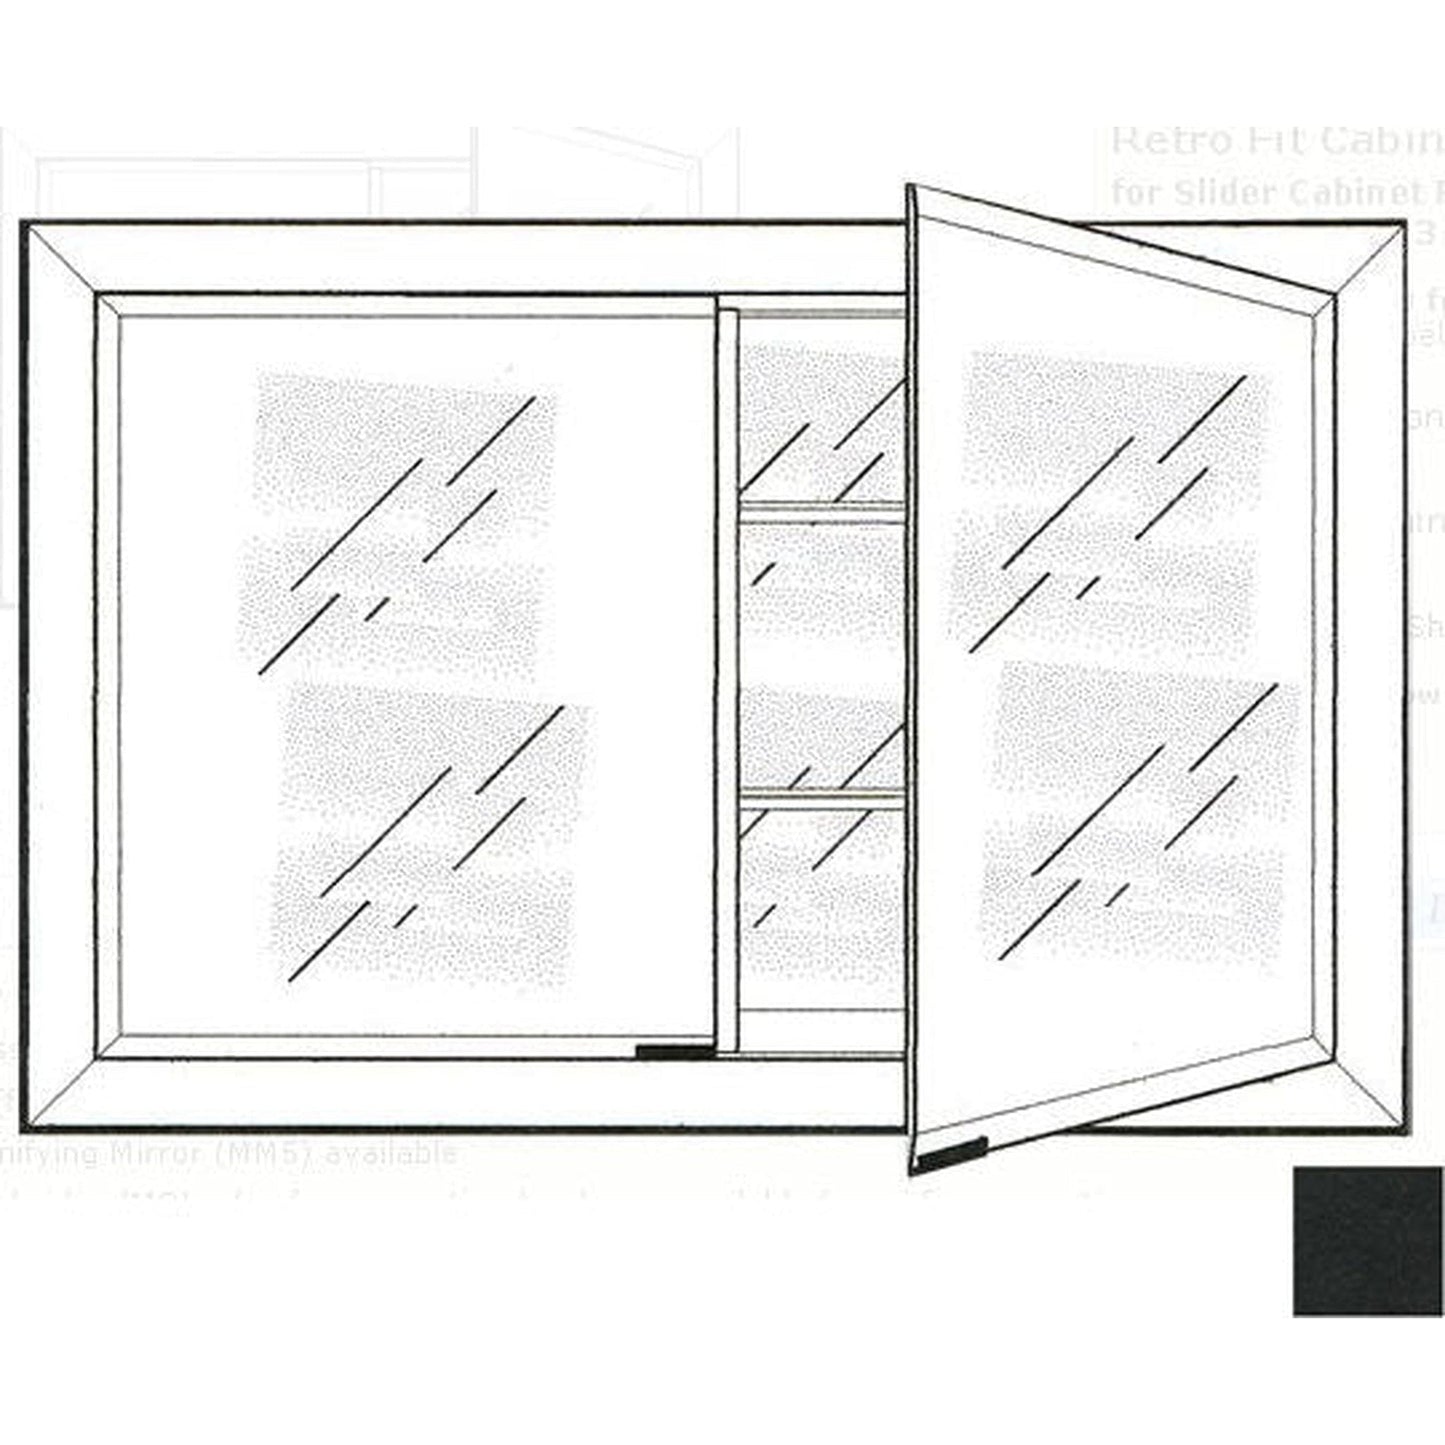 Afina Signature 27" x 21" Colorgrain Black Recessed Retro-Fit Double Door Medicine Cabinet With Beveled Edge Mirror